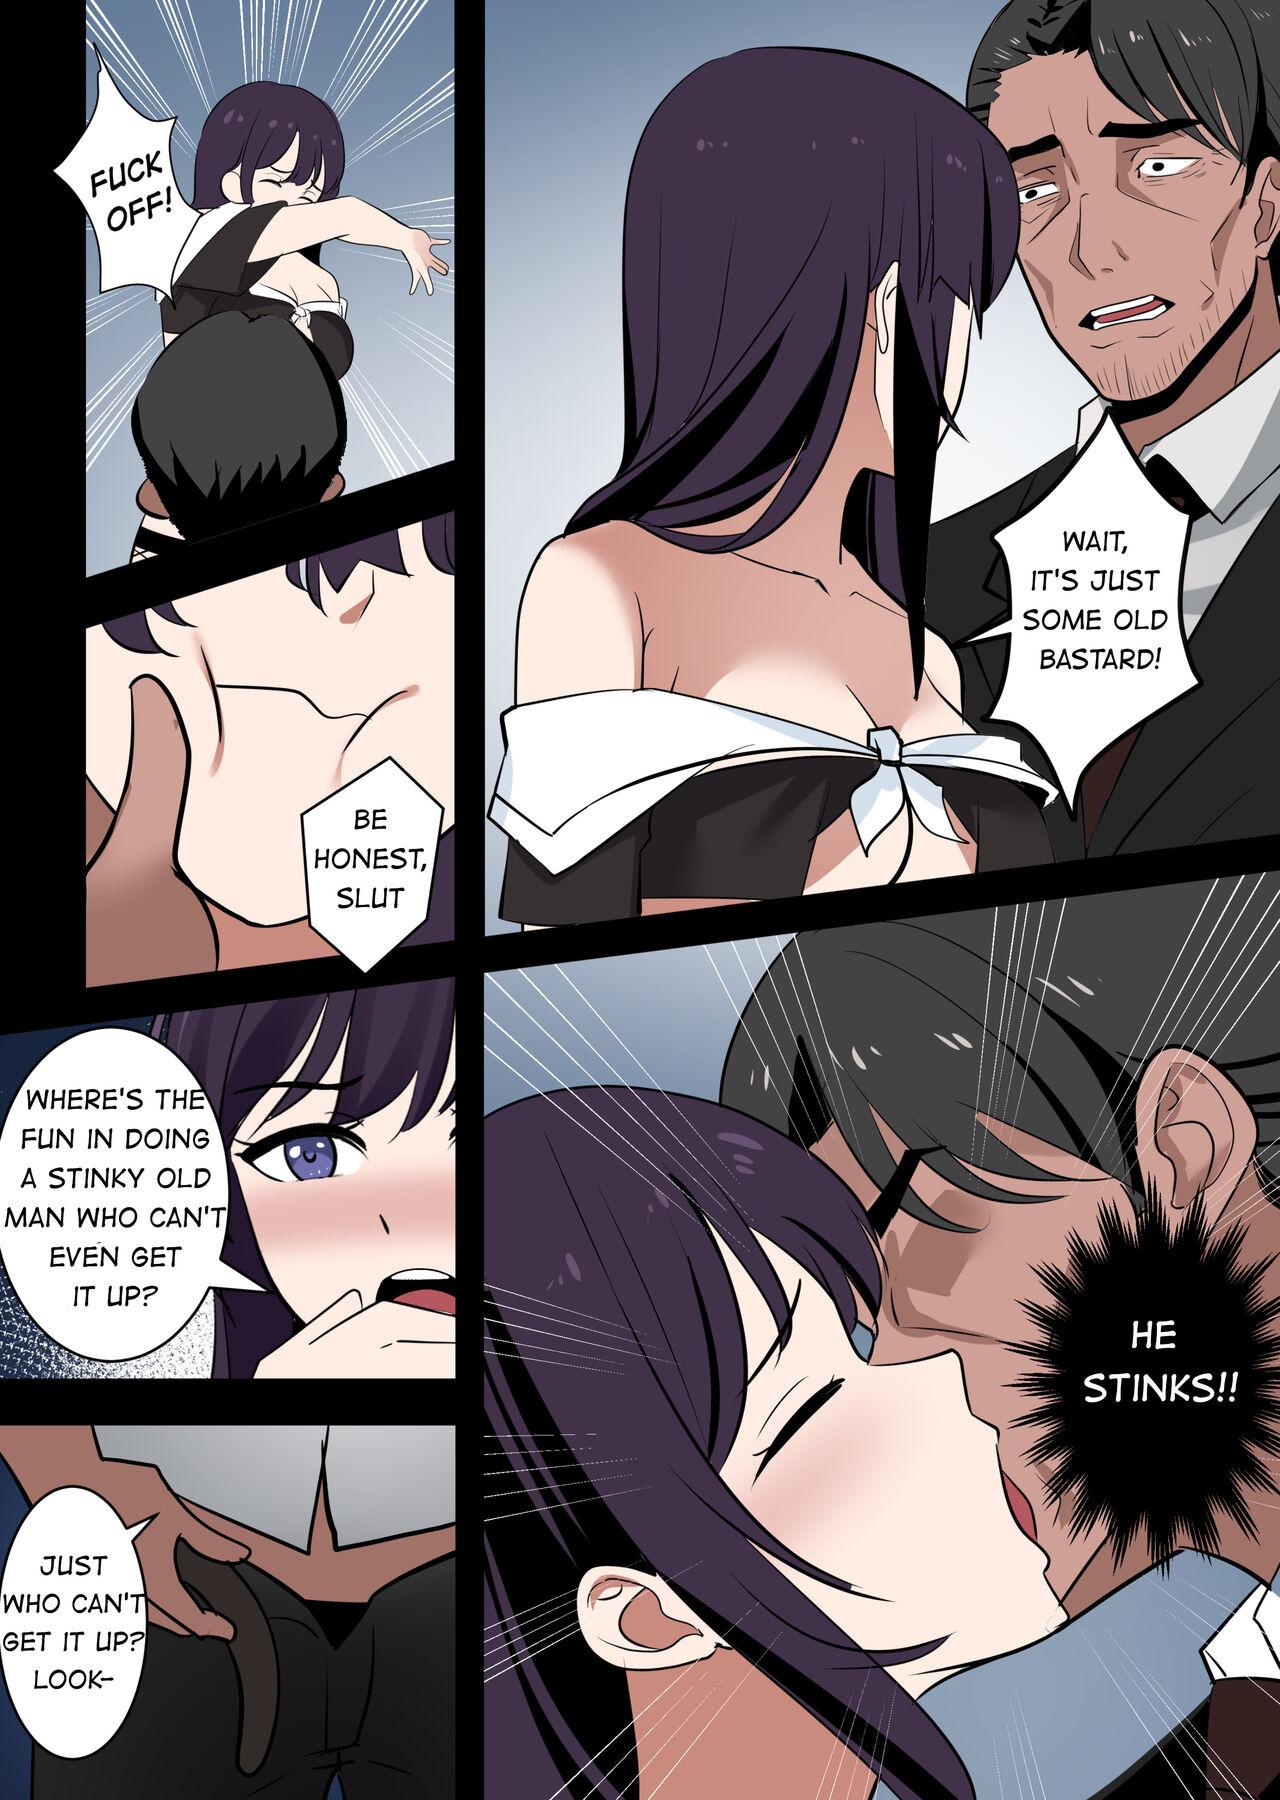 Fucking Possessing Sakurajima Mai and Cucking Her Lover - Seishun buta yarou wa bunny girl senpai no yume o minai Fishnet - Page 10